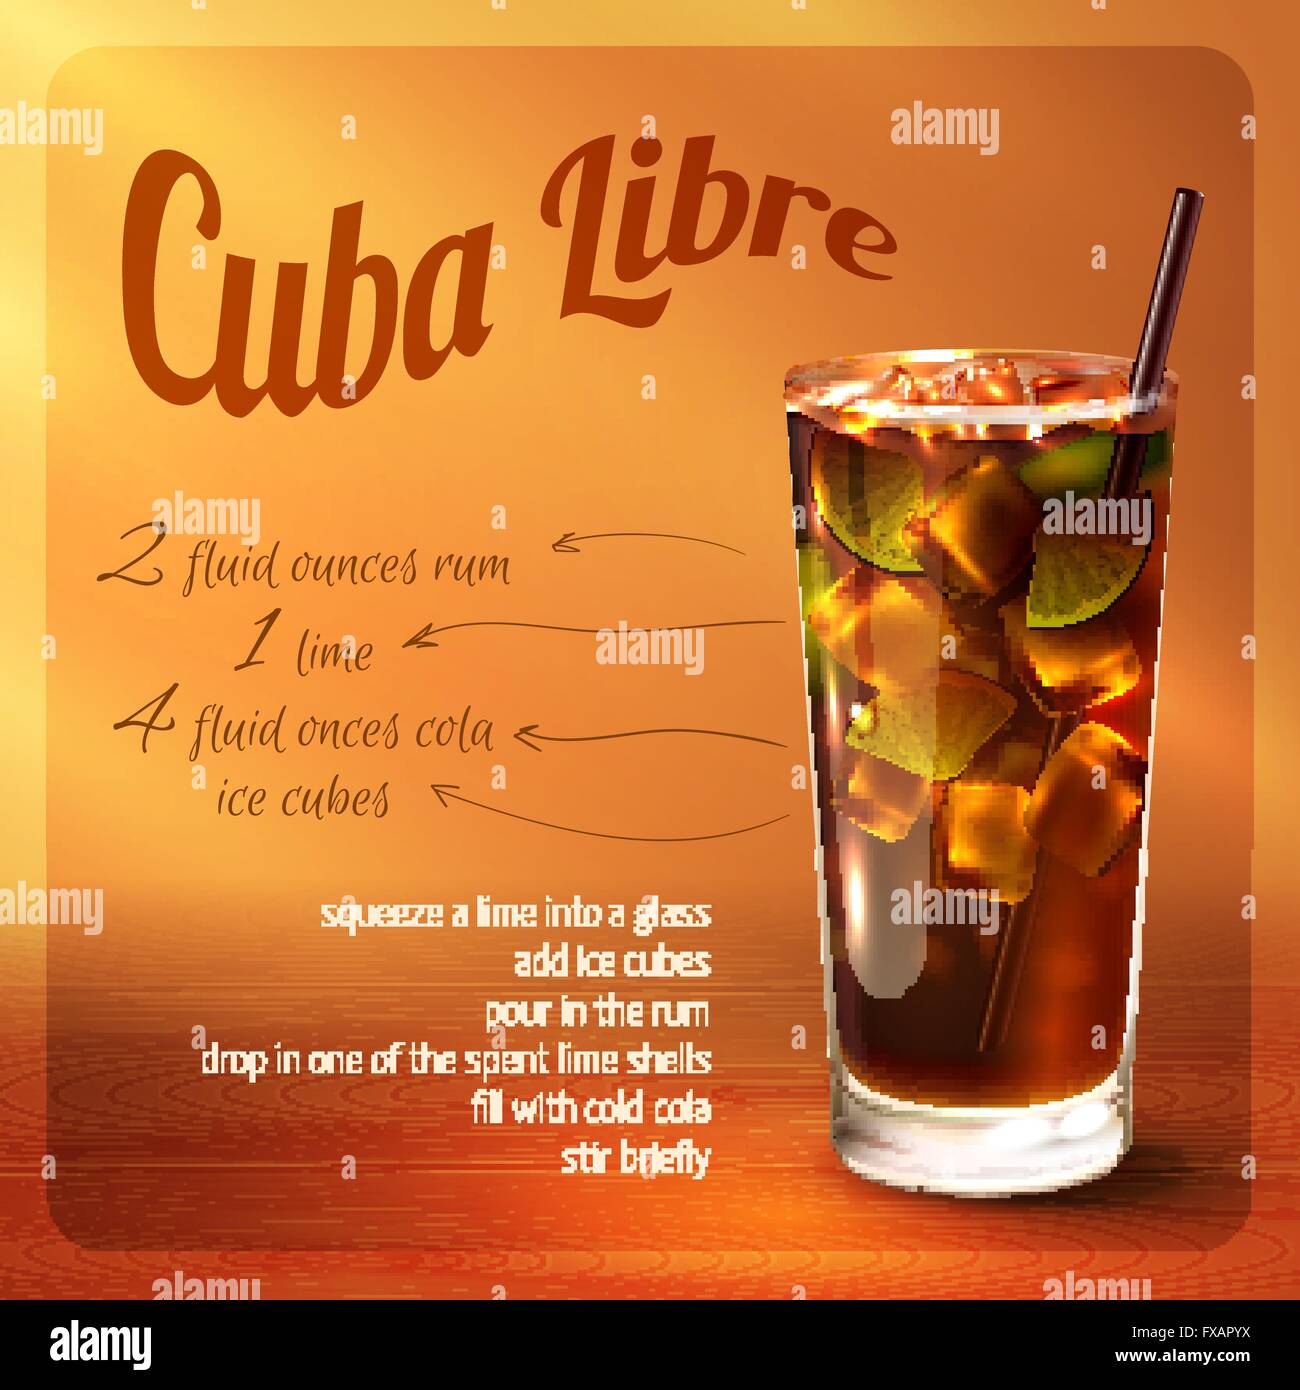 Recette du cocktail Cuba libre Image Vectorielle Stock - Alamy